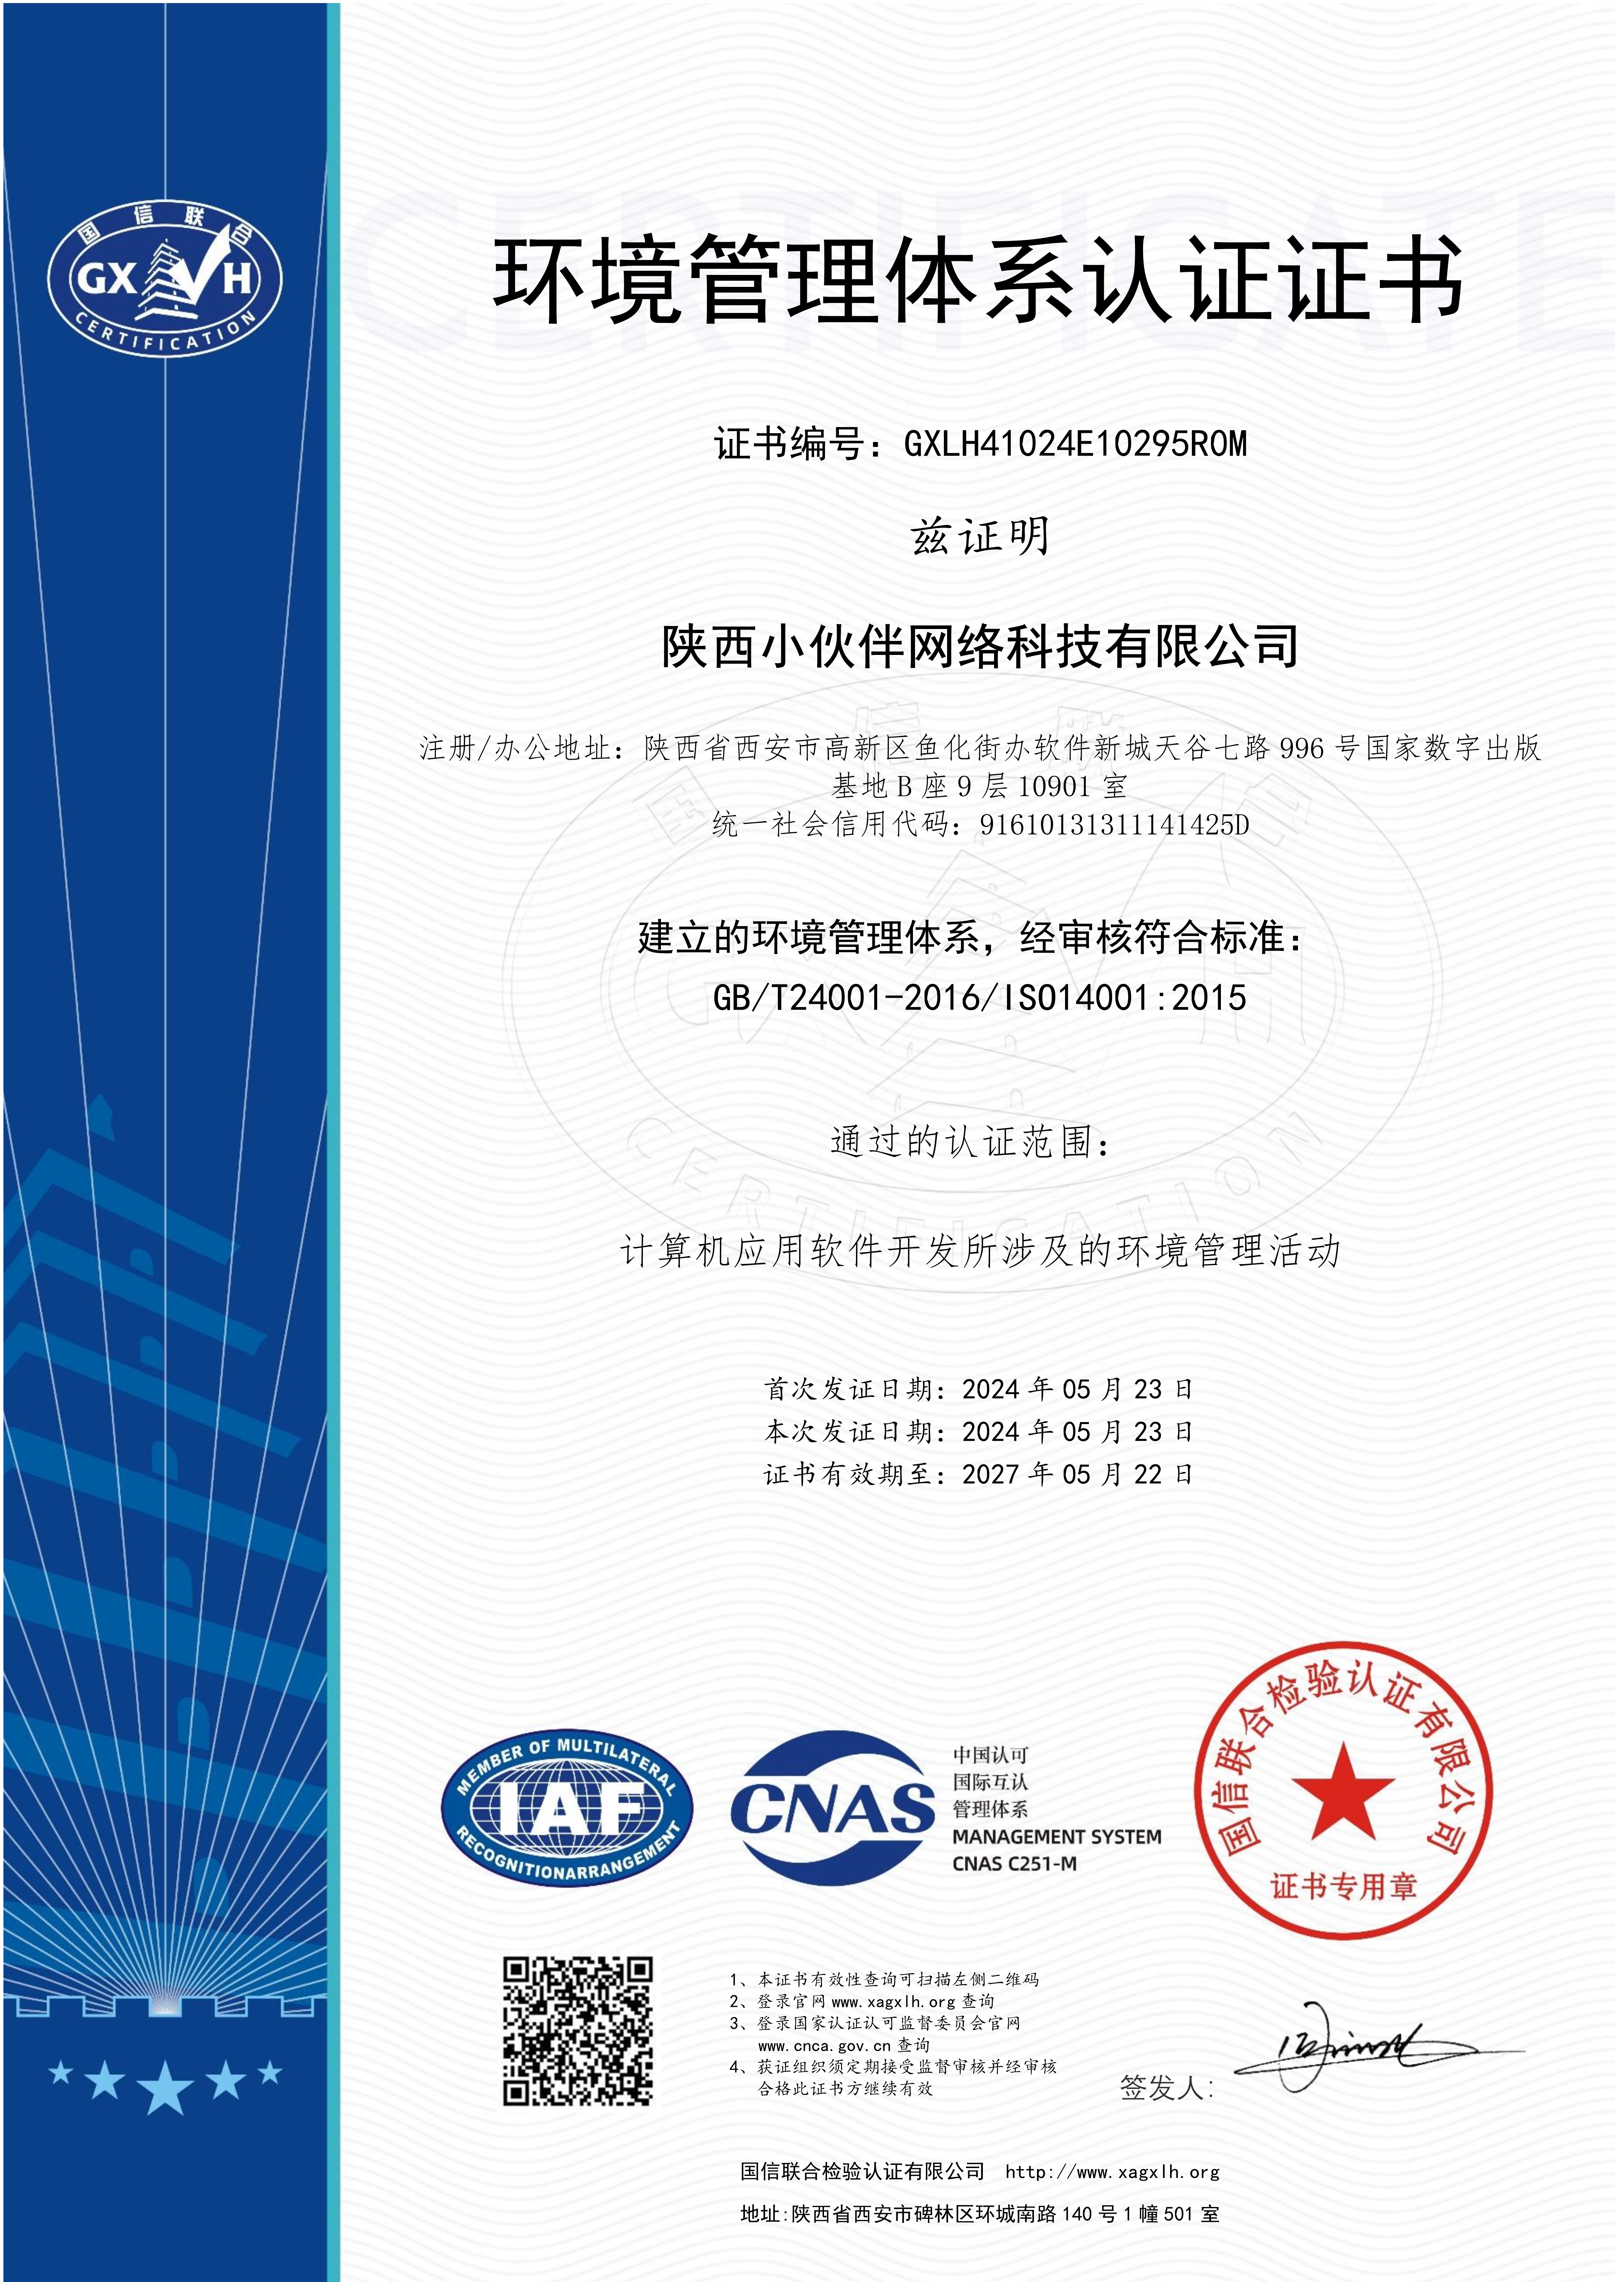 19.环境管理体系认证ISO4001.jpg